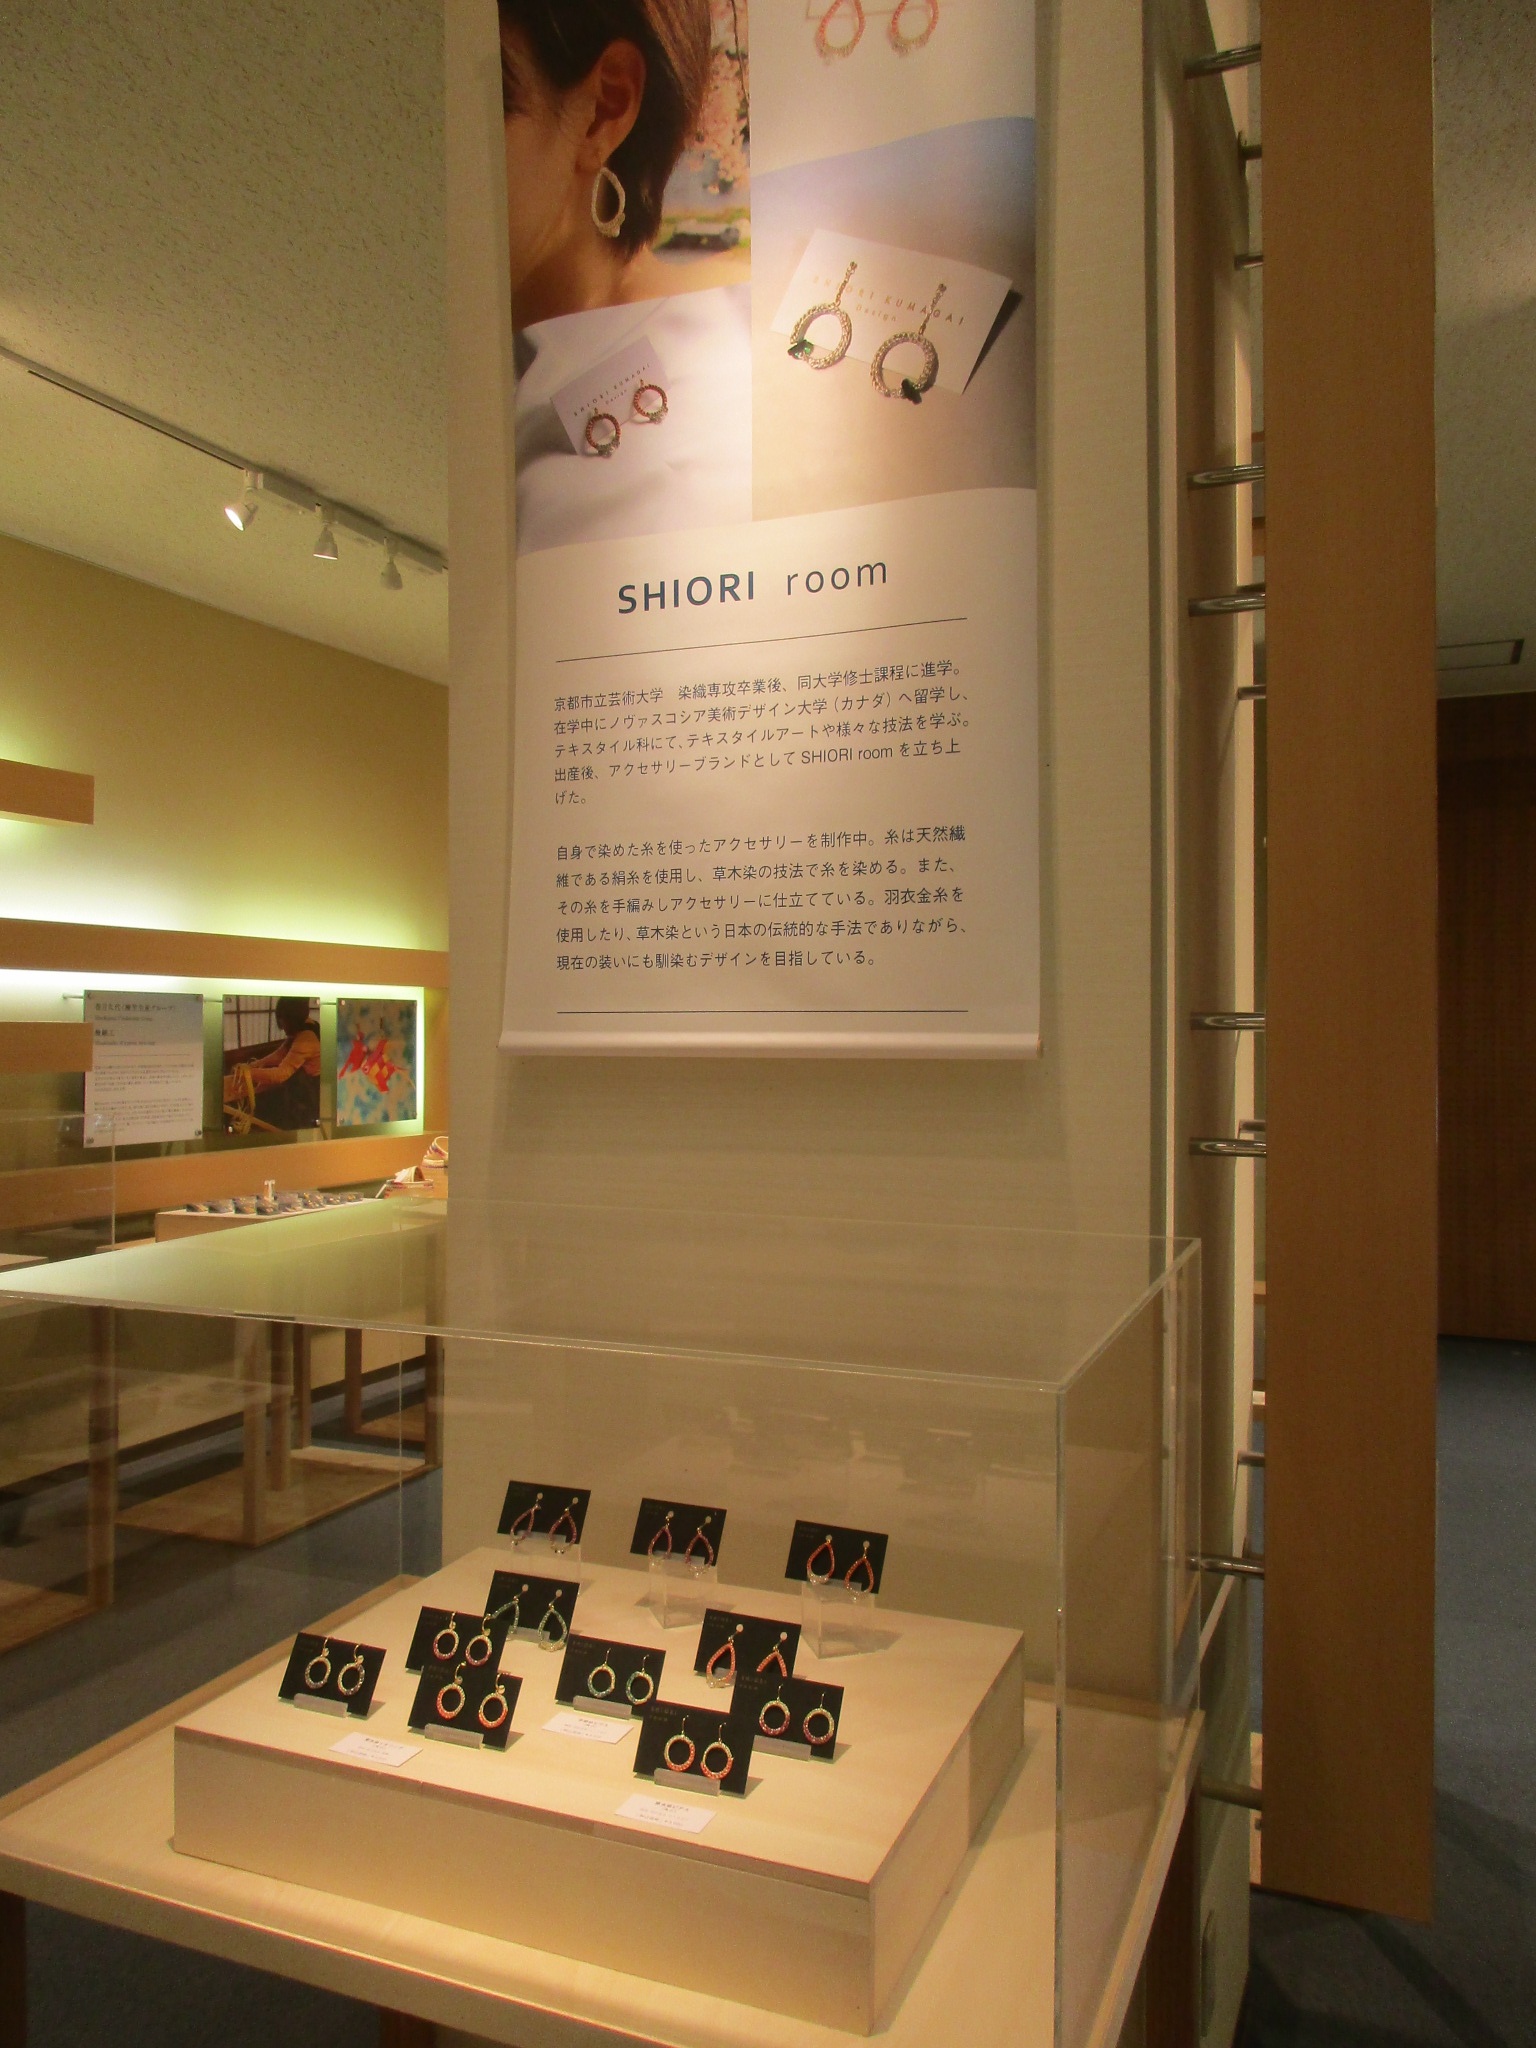 石川県立伝統産業工芸館での展示が終了致しました☺︎